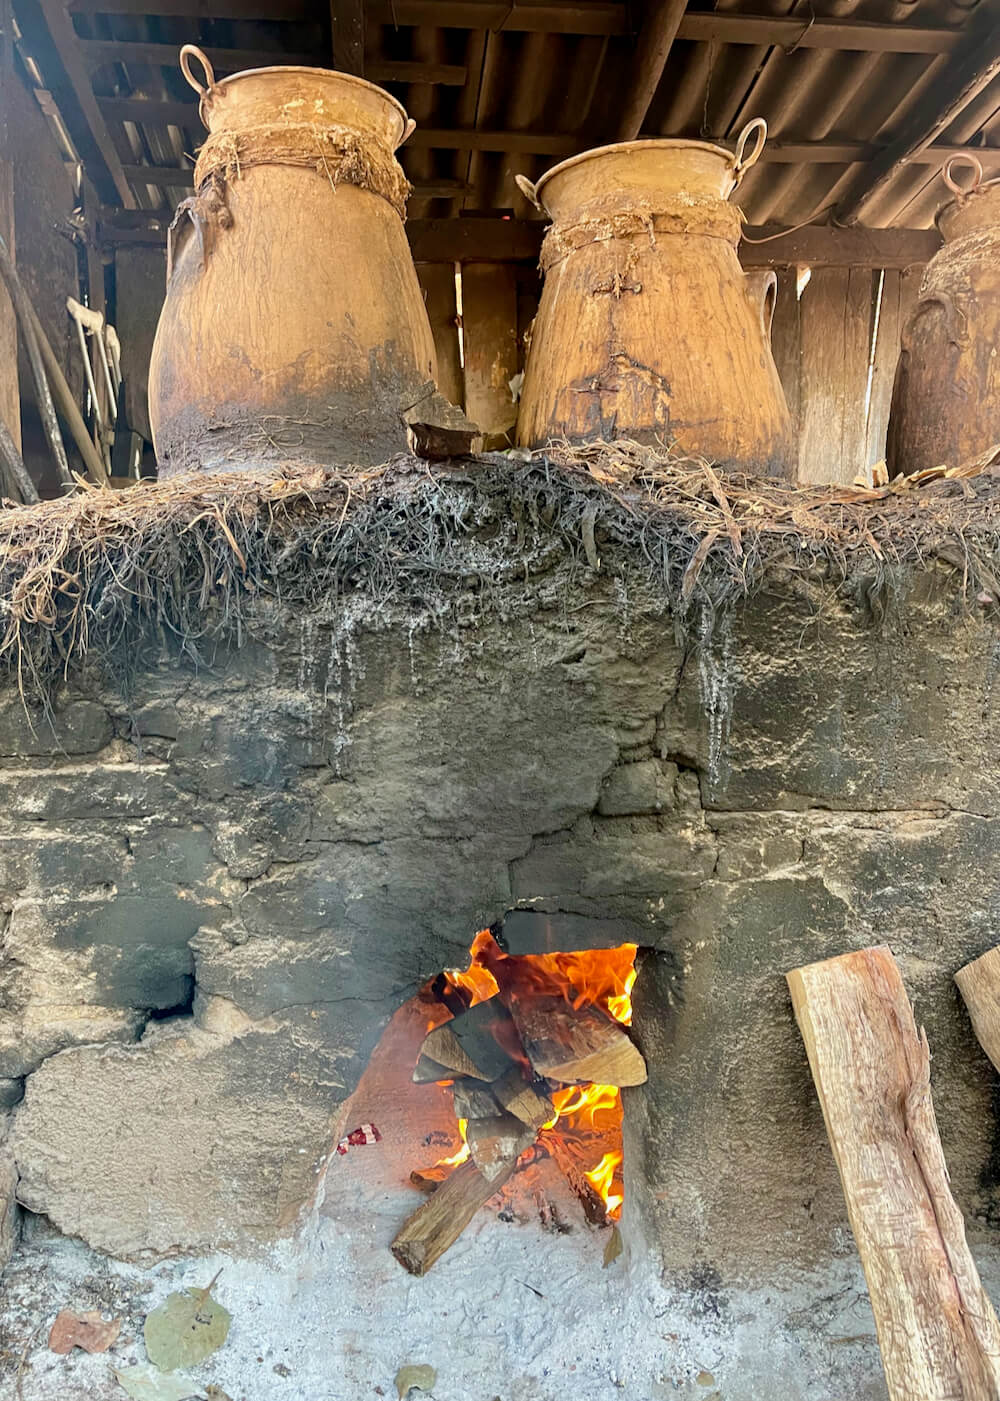 A raging fire heats two clay pot stills